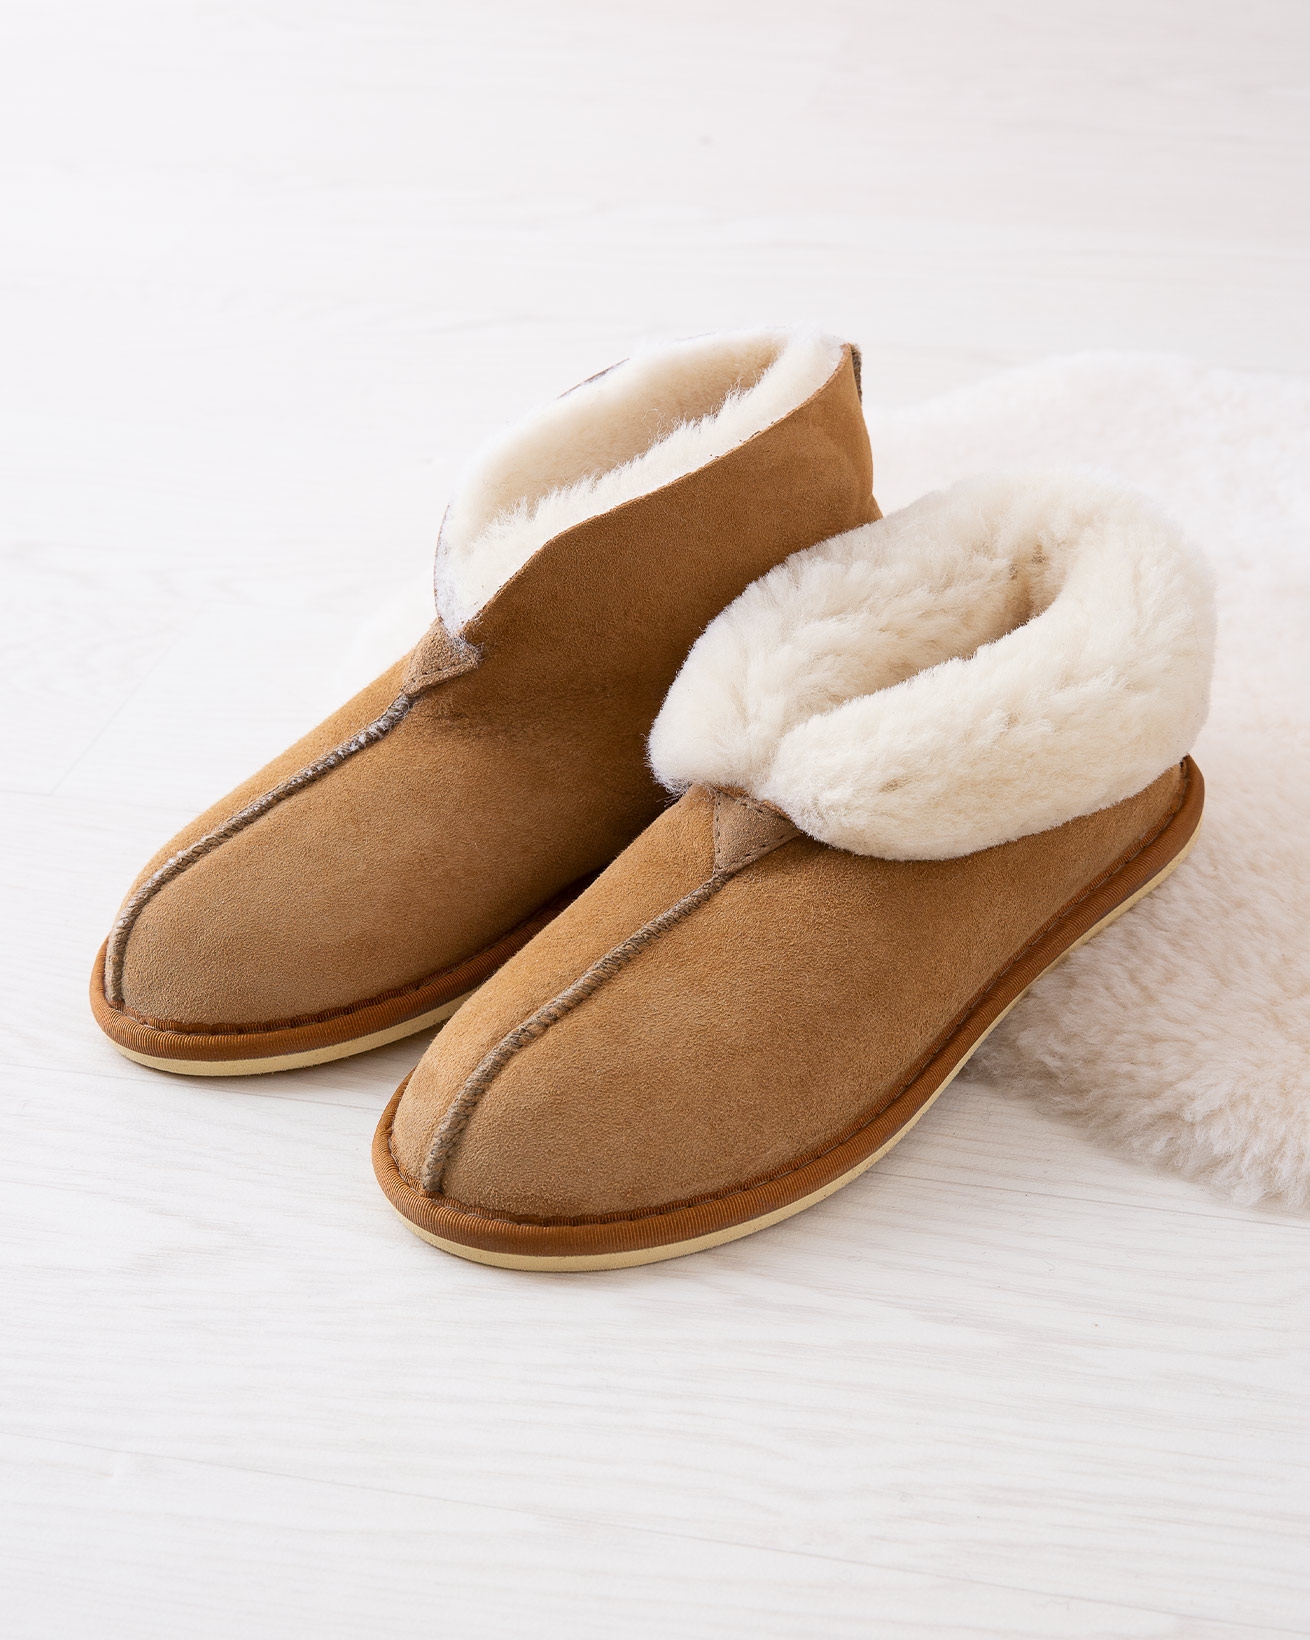 british sheepskin slippers